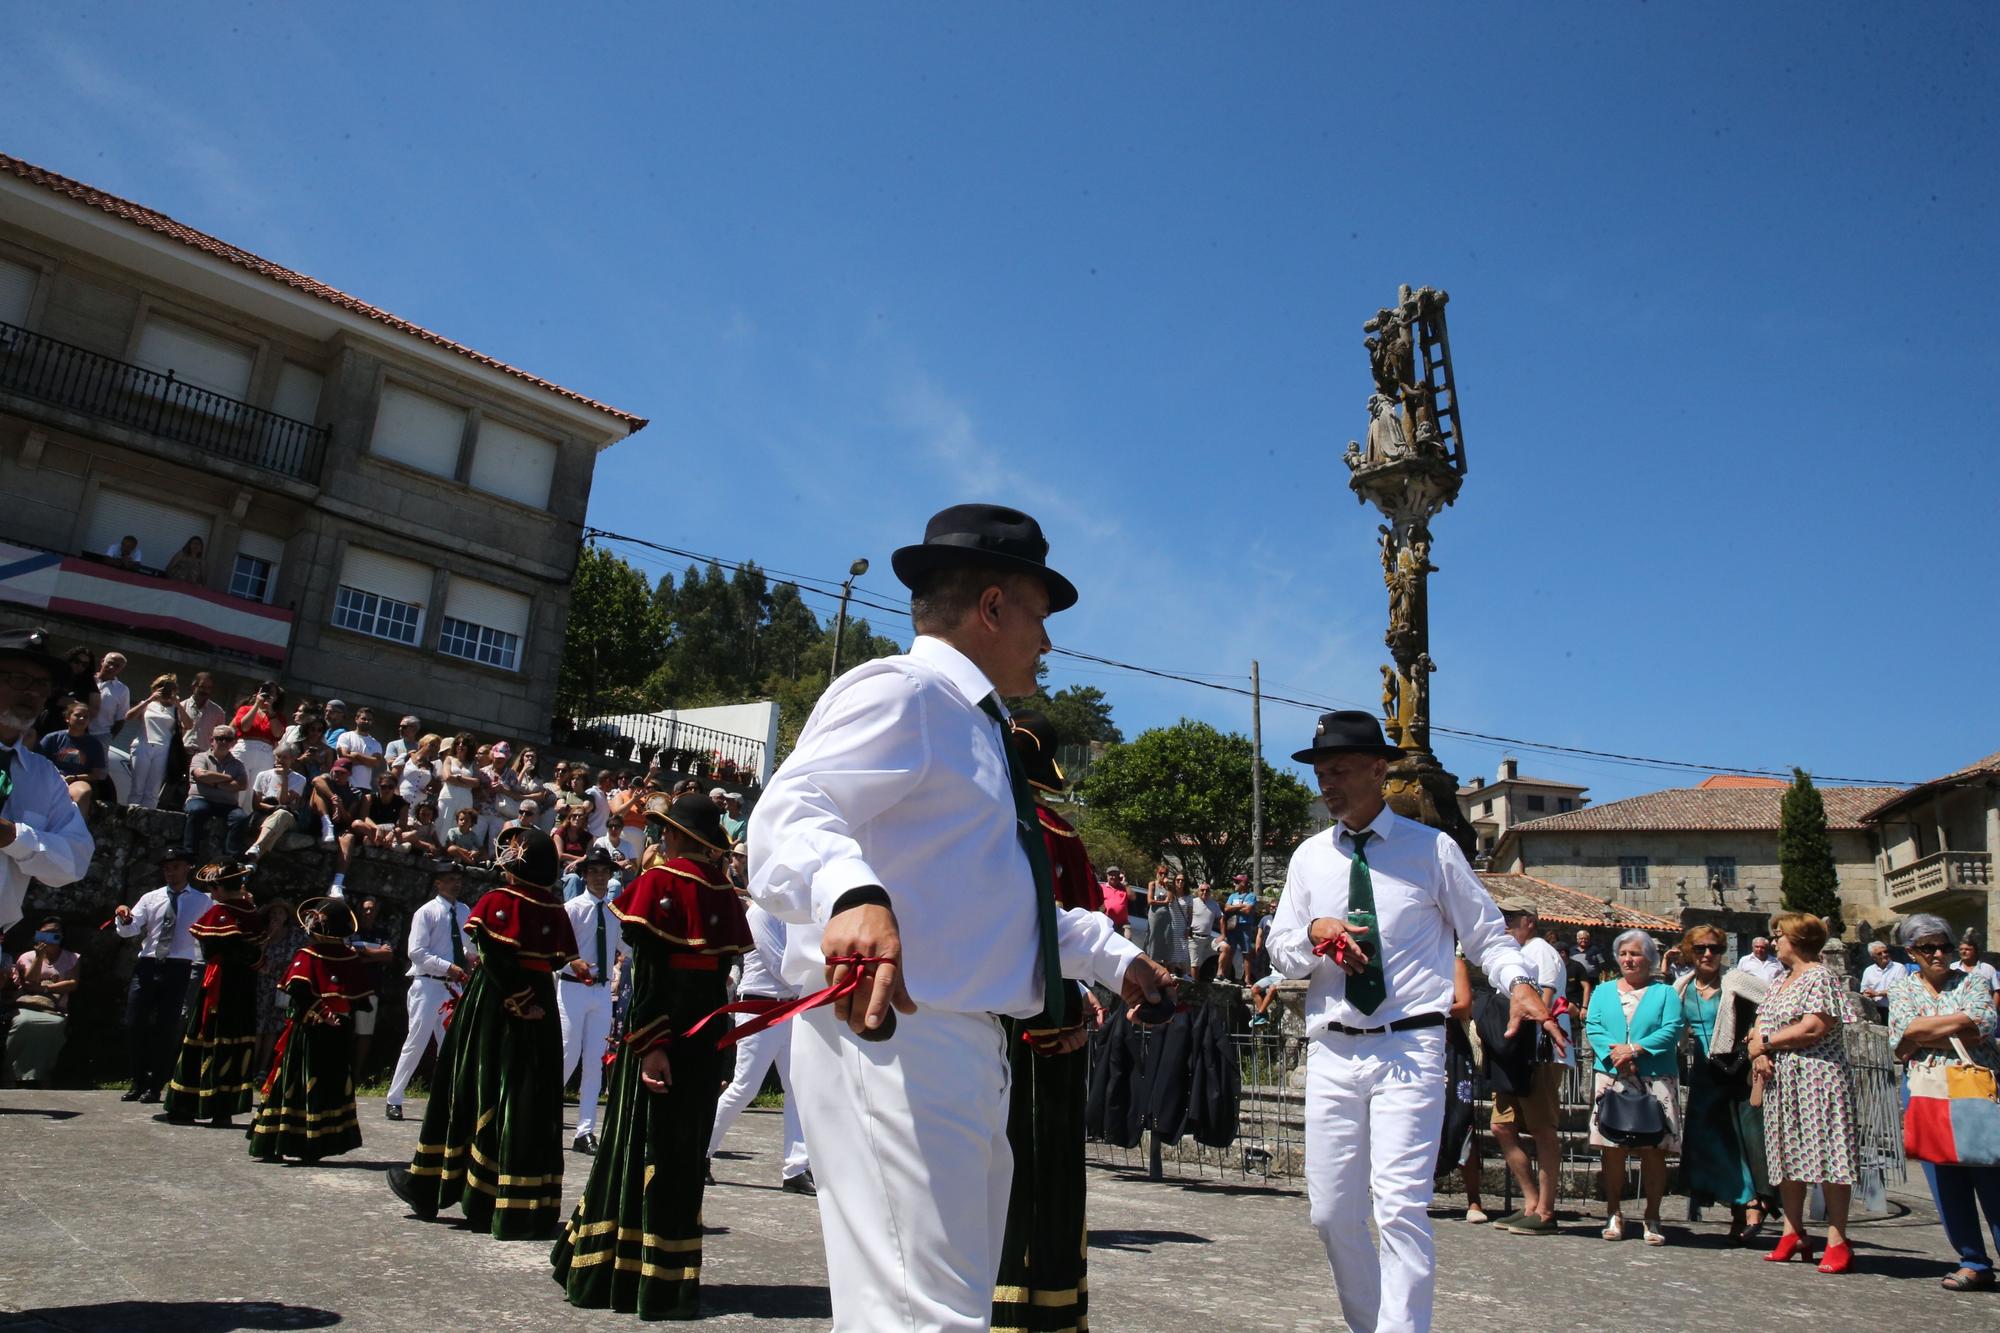 La procesión y la danza de San Roque de O Hío en imágenes (II)